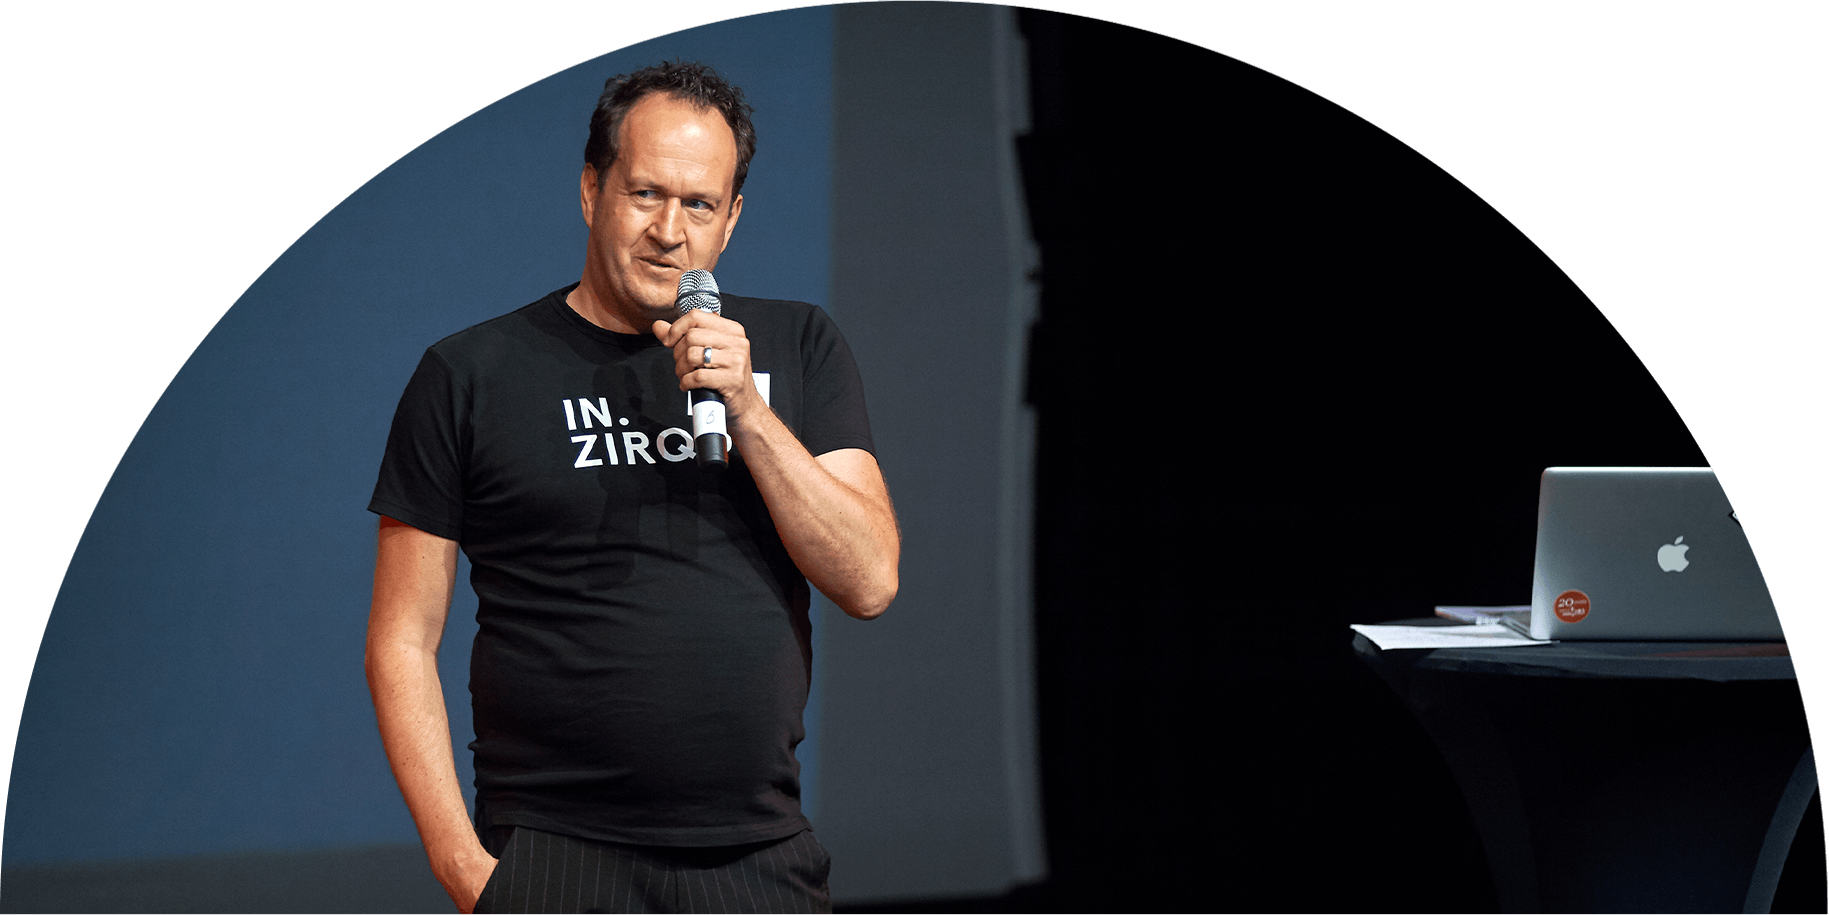 Michael Pigl hält einen Vortrag beim ZBK-Fachtag 2019 zur In.Zirque-Didaktik